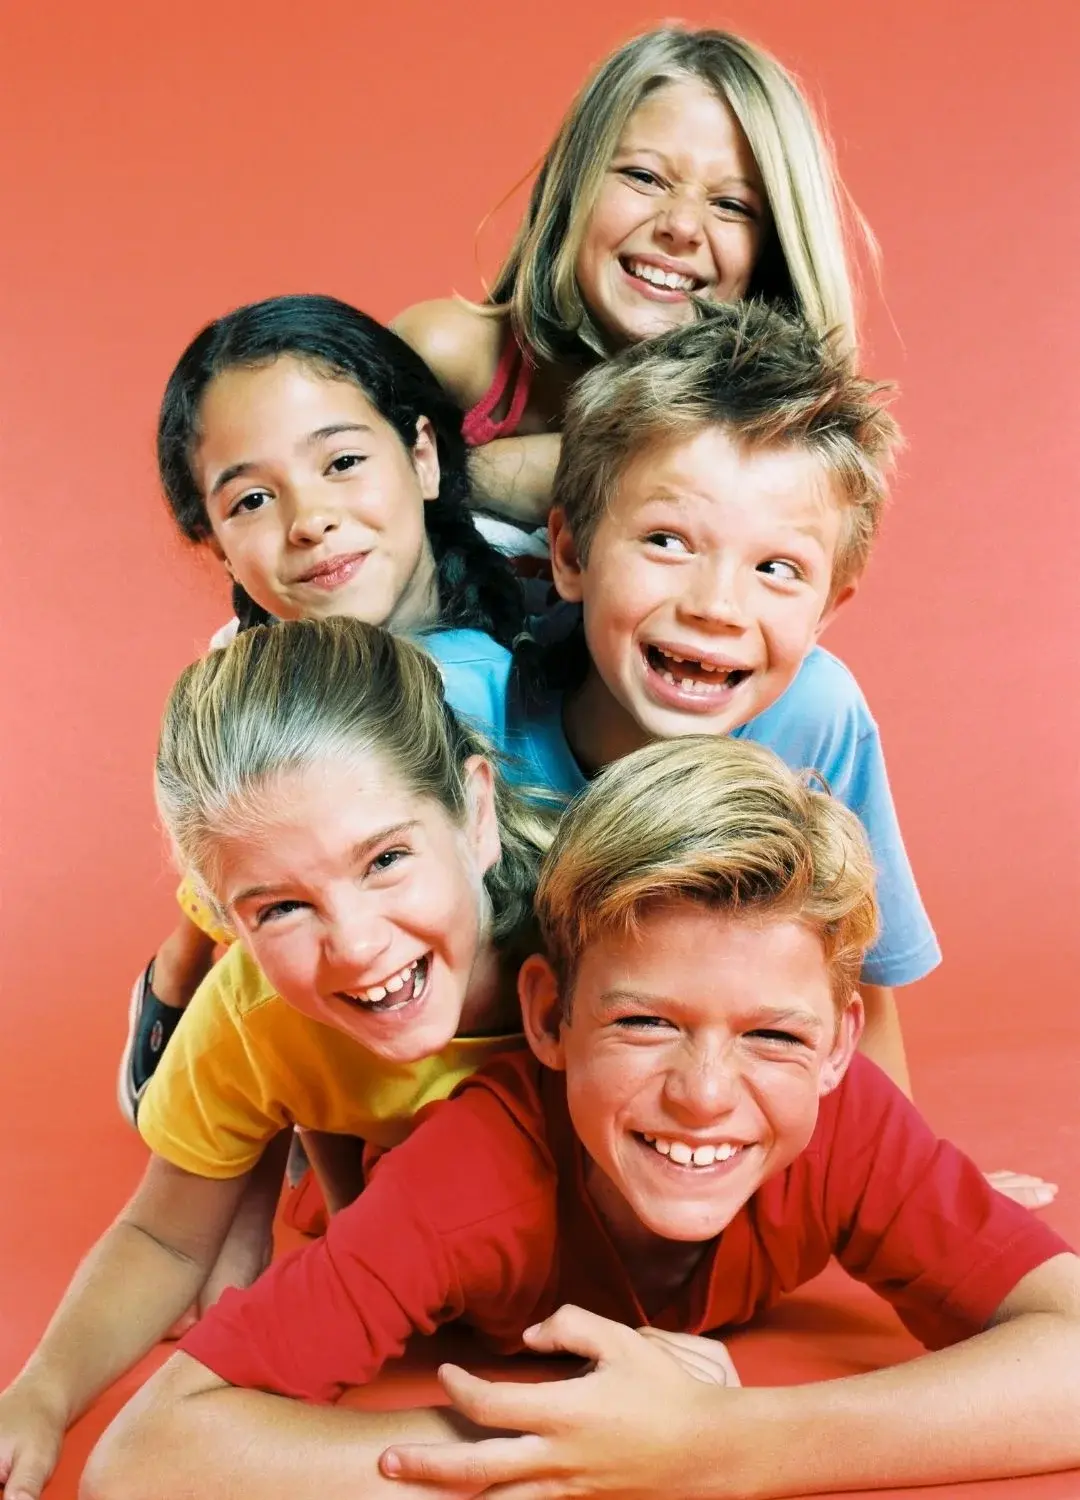 Piątka uśmiechniętych dzieci na morelowym tle